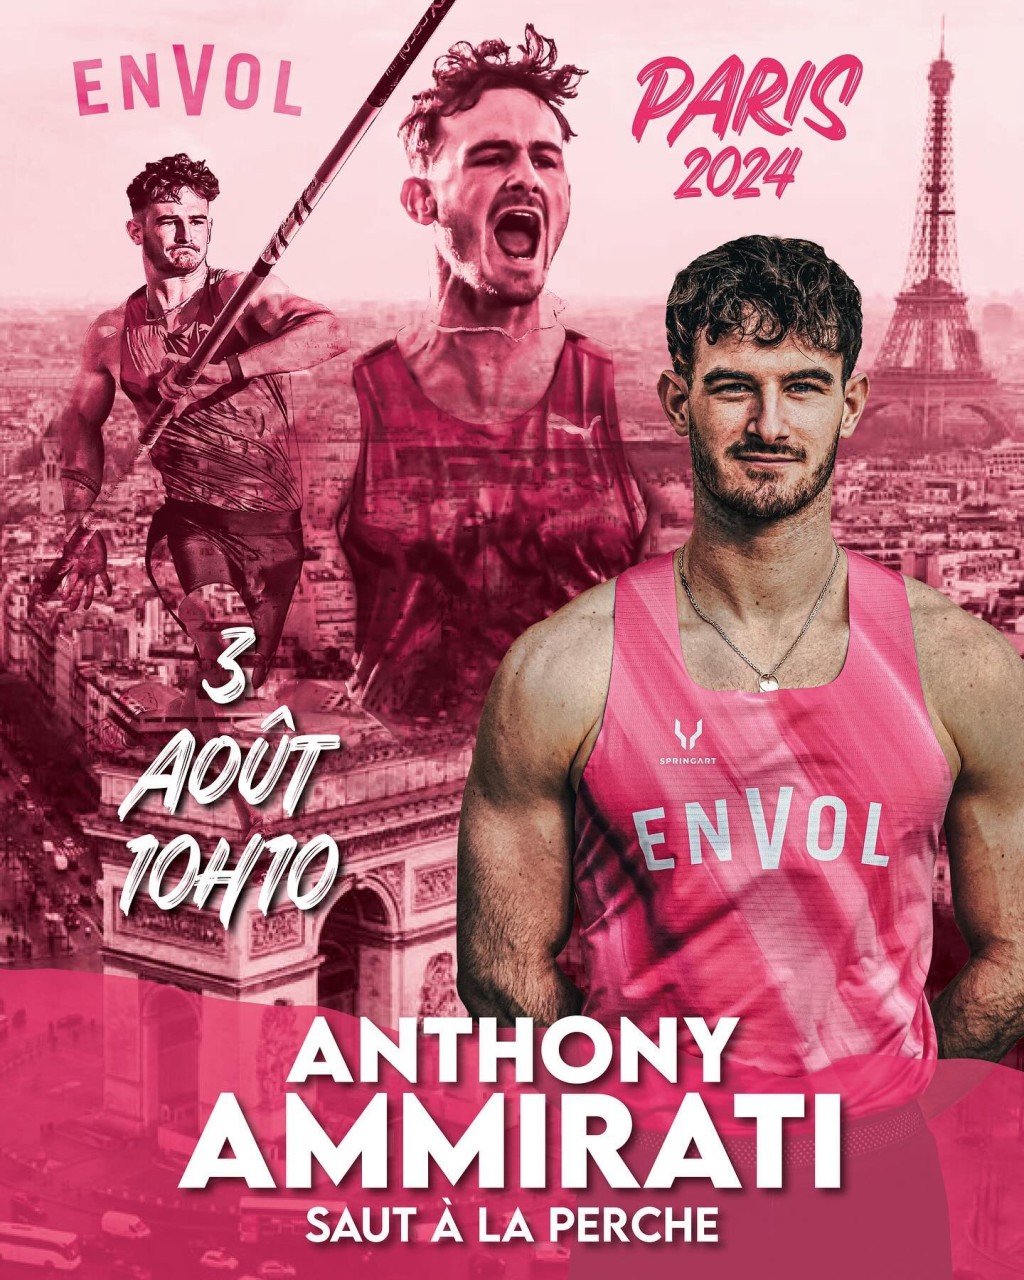 Anthony Ammirati雄心勃勃首度挑战奥运。